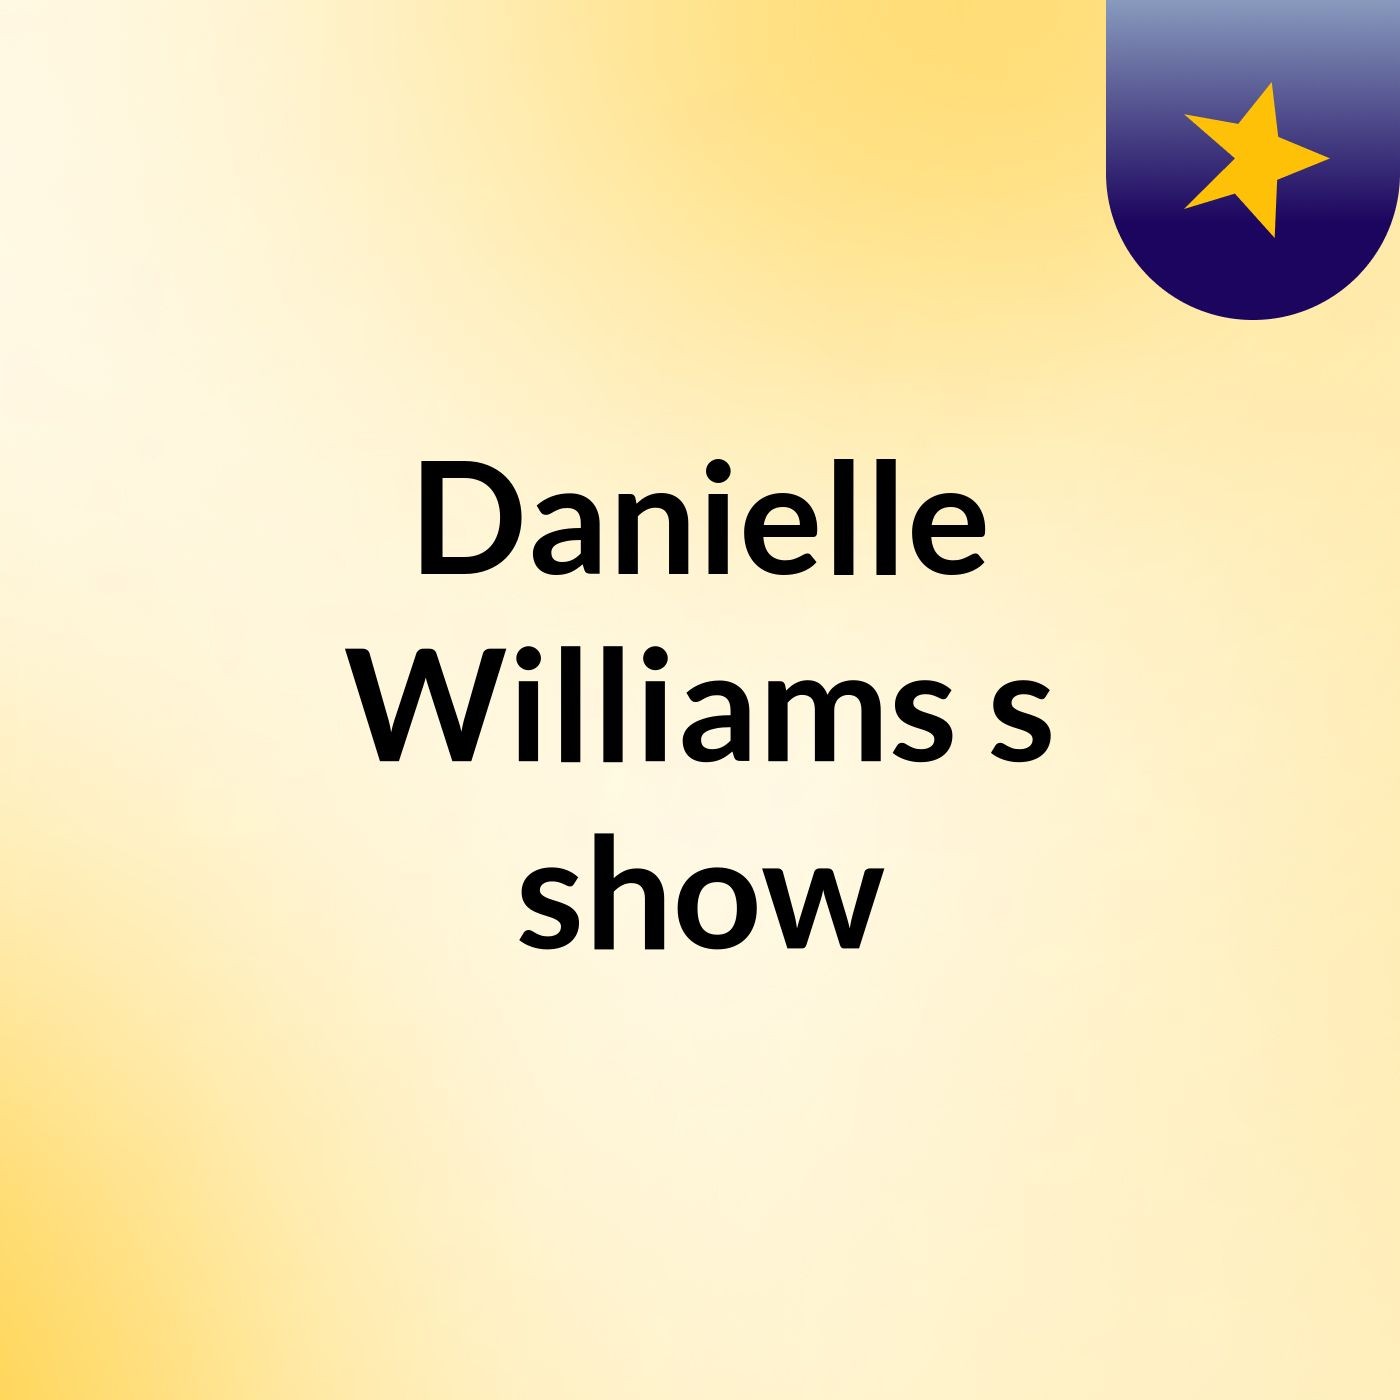 Danielle Williams's show